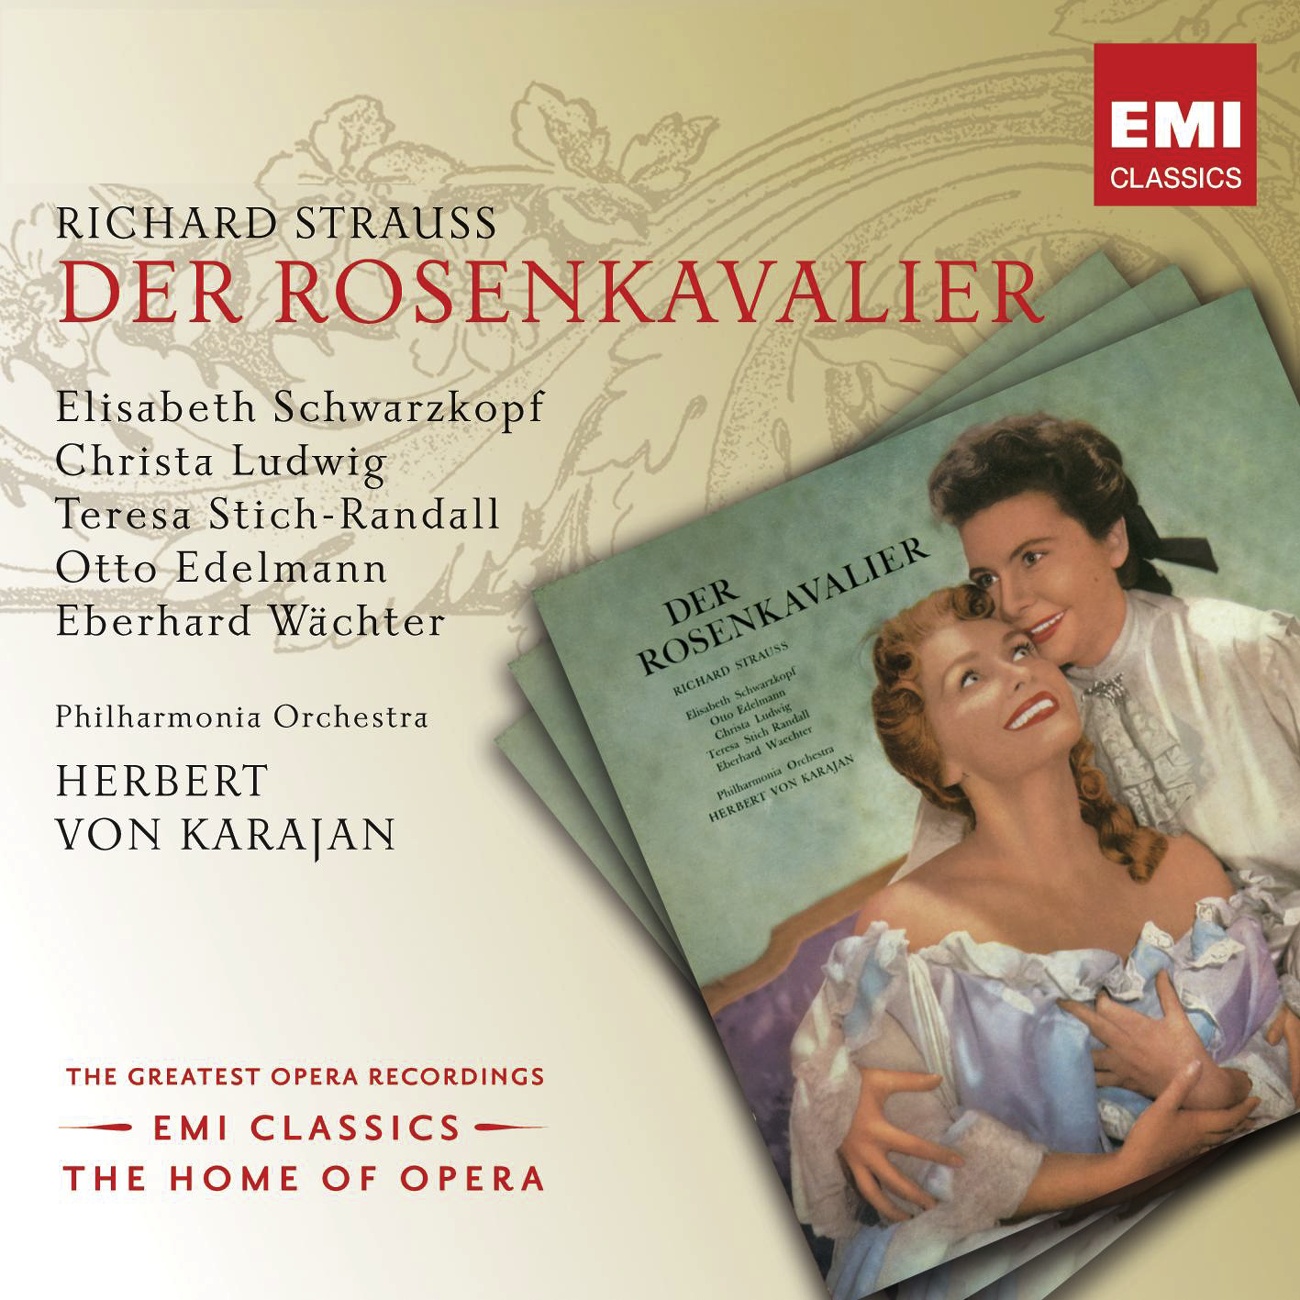 Der Rosenkavalier (2001 Digital Remaster), Act III: Sind halt also, die jungen Leut'! (Faninal/Marschallin)